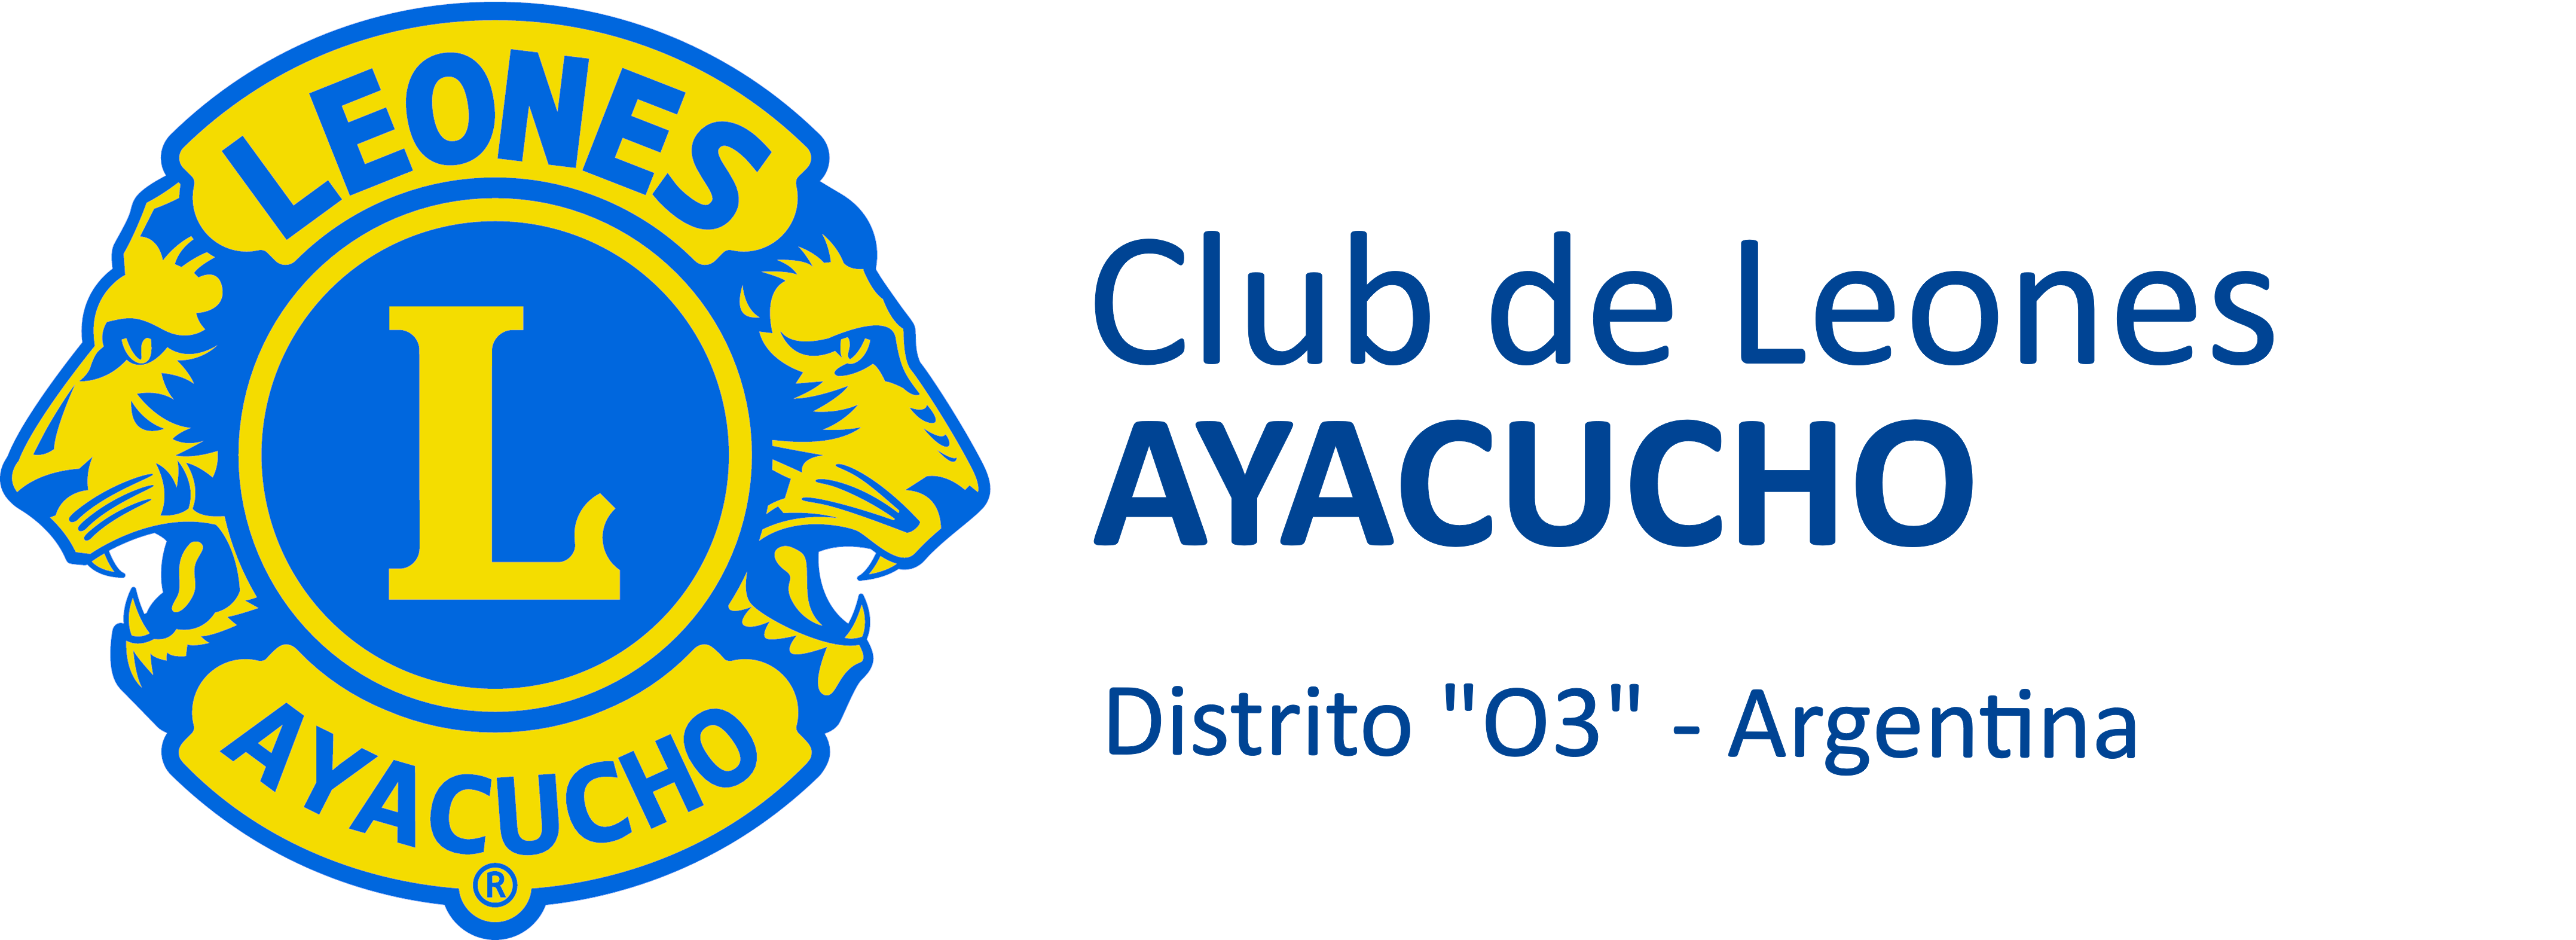 Club de Leones de Ayacucho